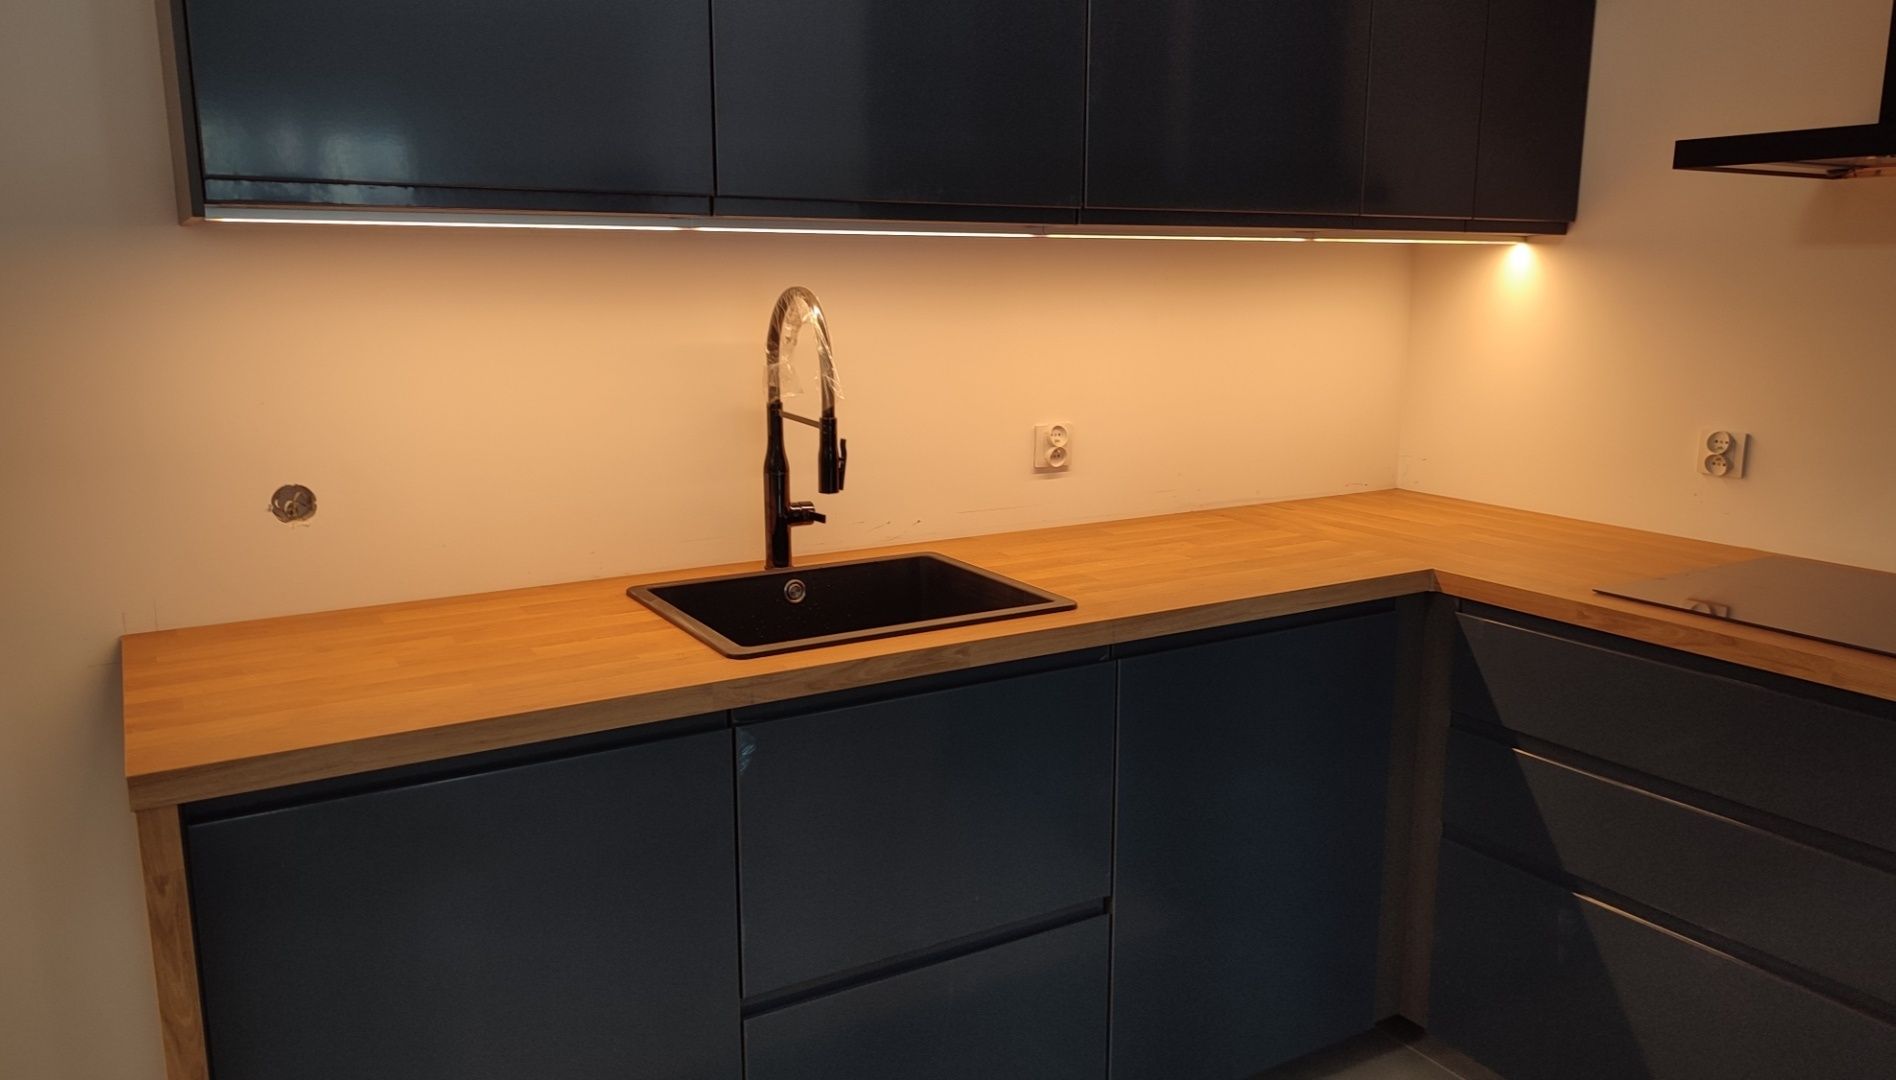 Składanie i montaż mebli kuchennych Kuchnie IKEA Metod